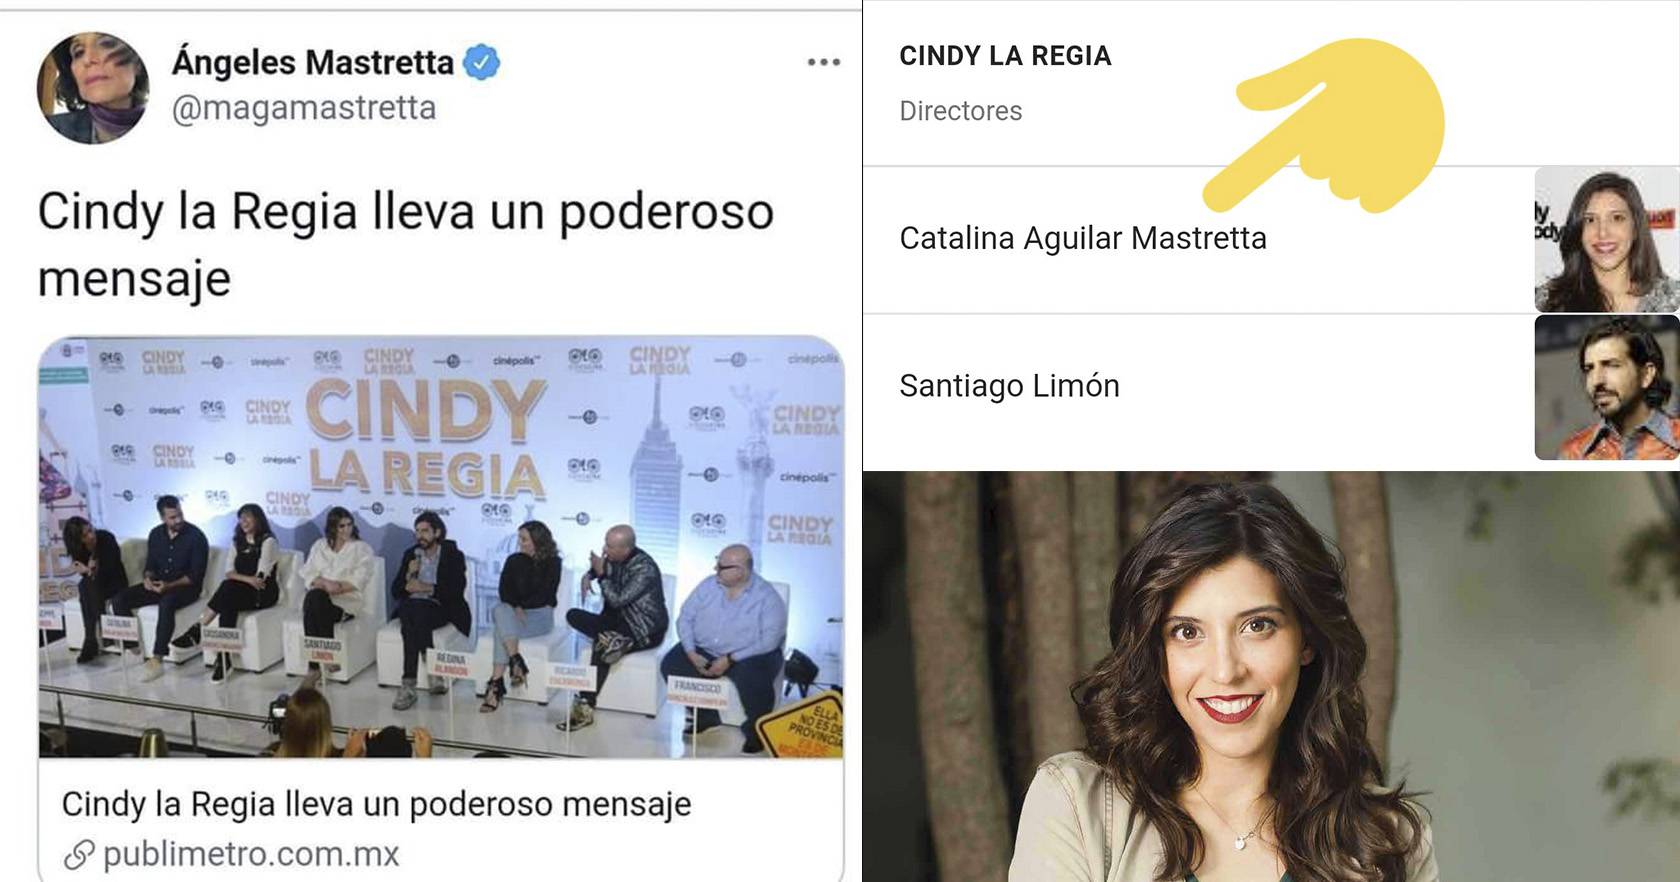 Descubren por qué a Ángeles Mastretta le gustó tanto 'Cindy la Regia'- la dirigió su hija